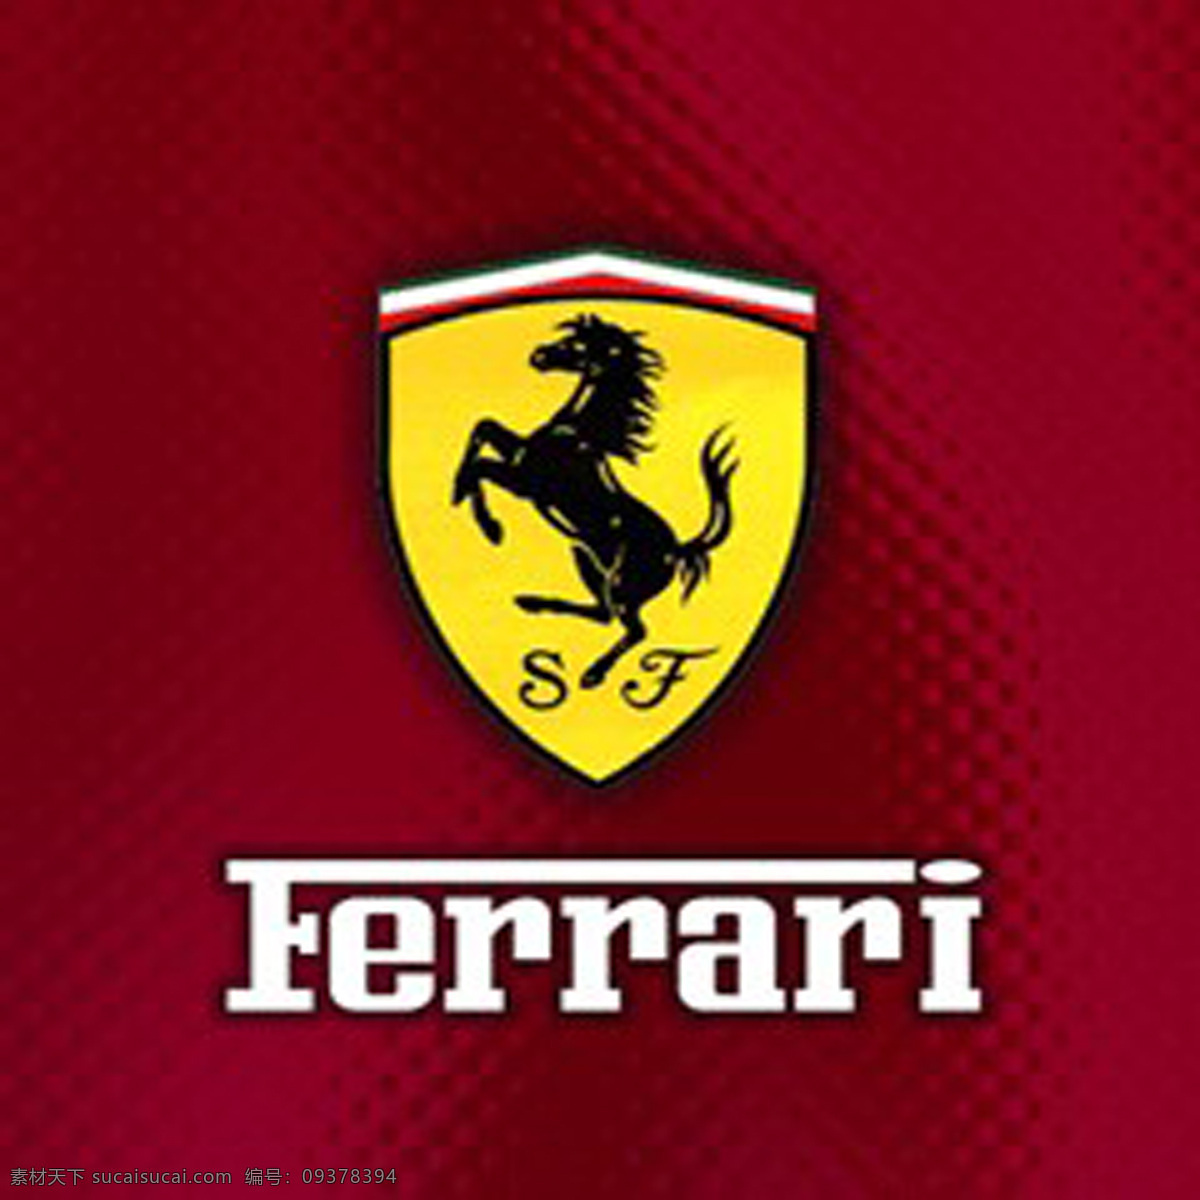 法拉利标志 法拉利 标志 ferrari 企业 logo 标志图标